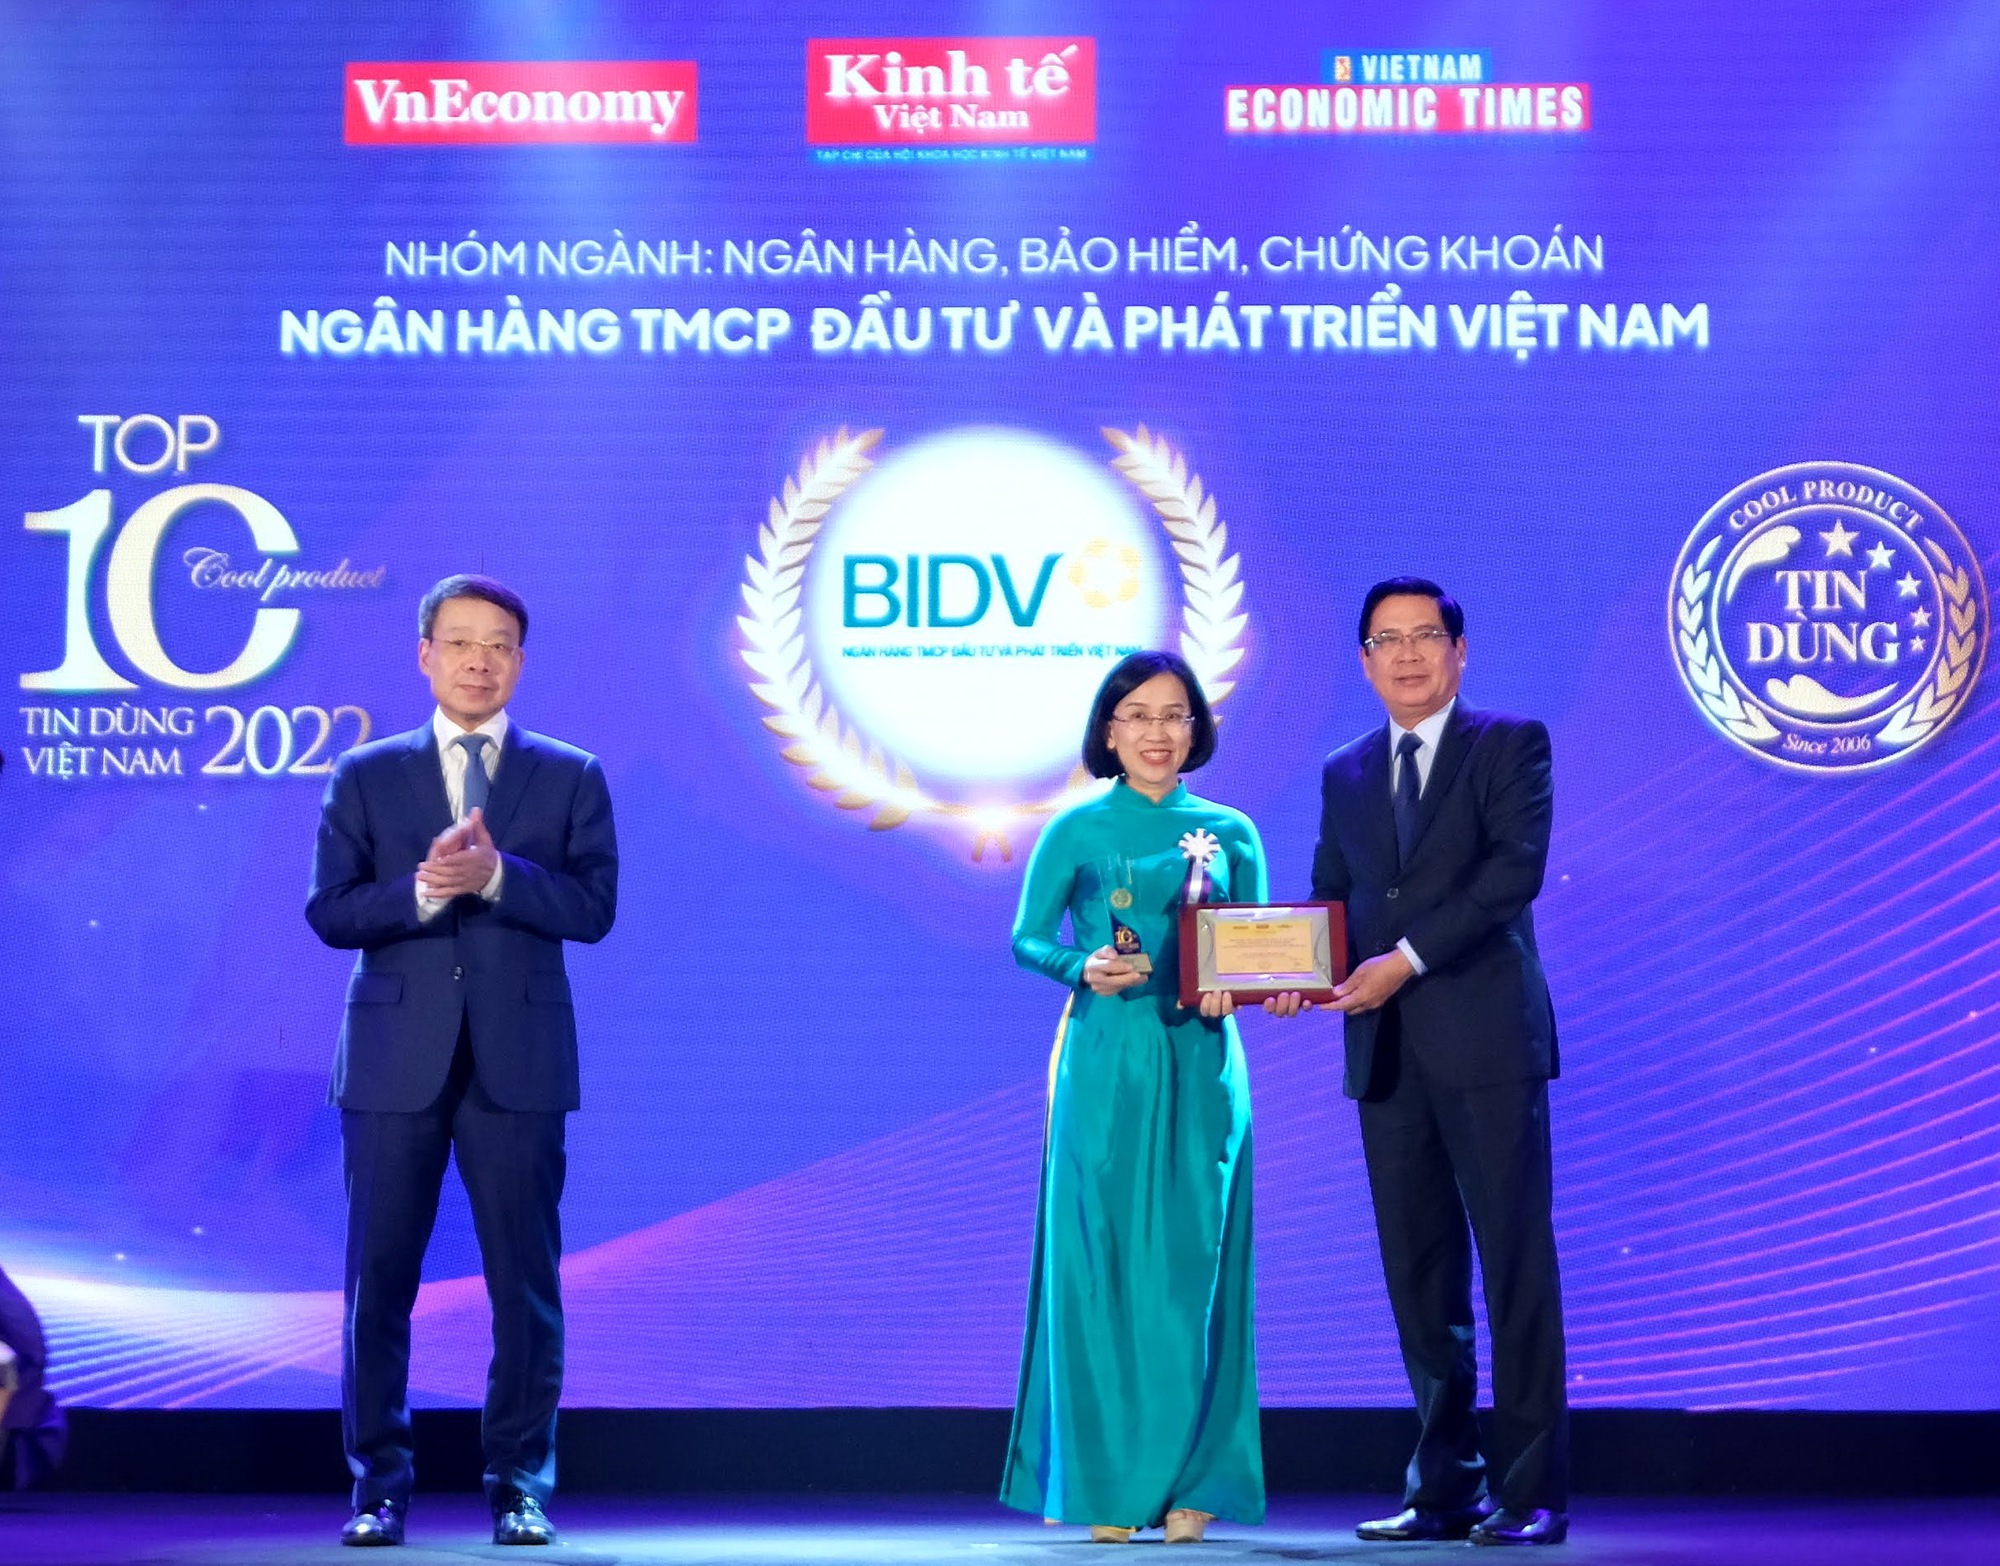 2 sản phẩm của BIDV nhận giải thưởng Tin Dùng Việt Nam 2022 - Ảnh 1.